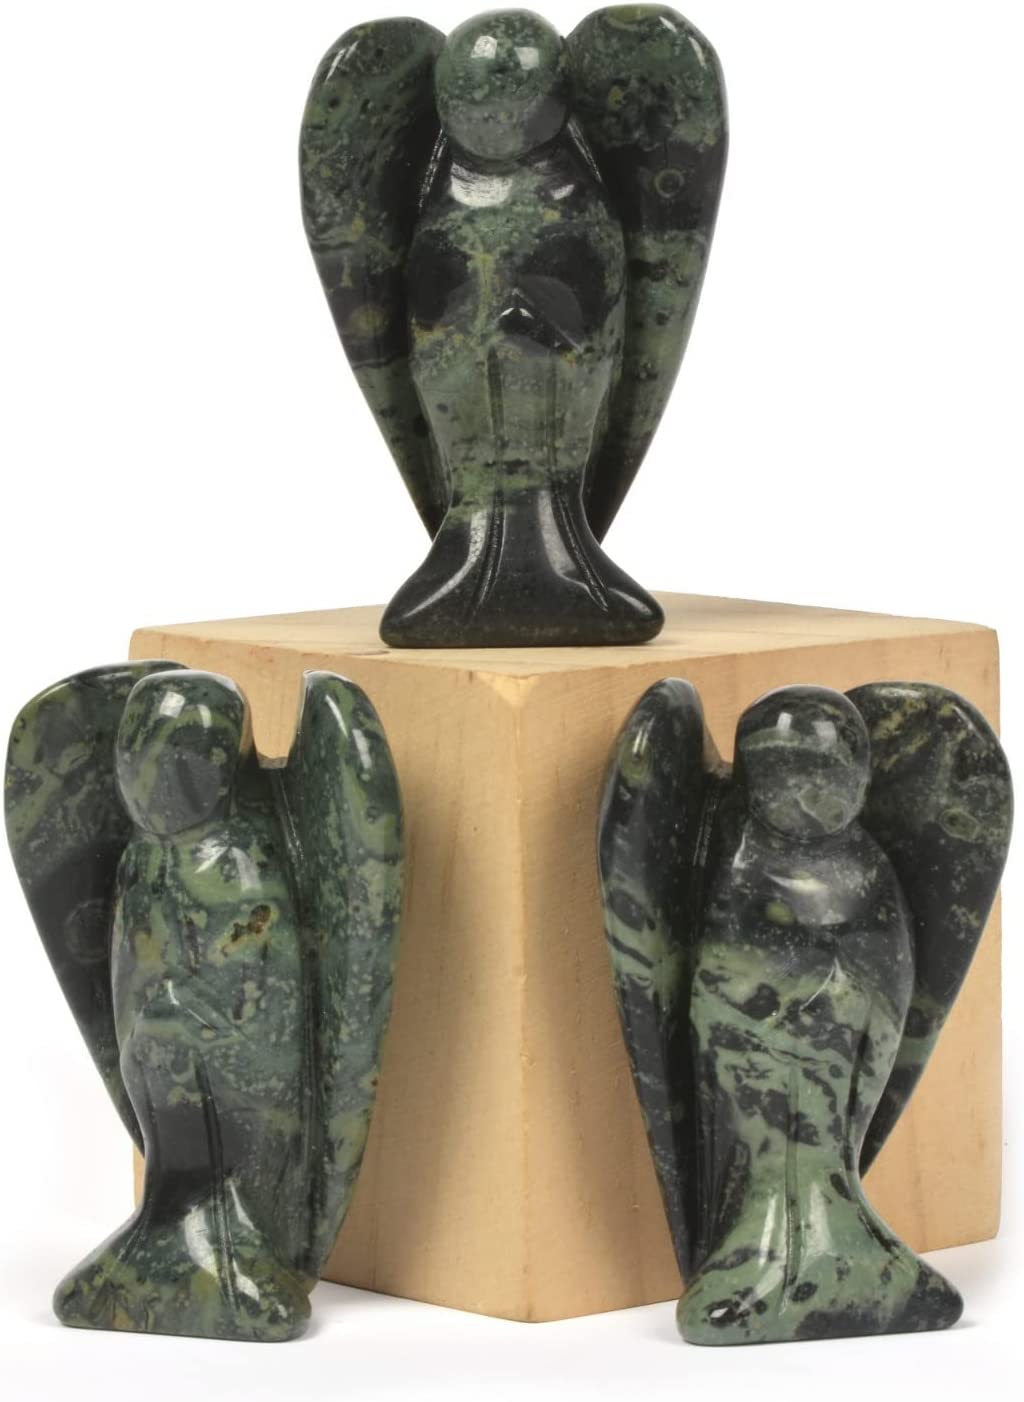 Reikistal Justinstones sculpté noir obsidienne pierre précieuse paix ange de poche gardien ange guérison statue 2 pouces